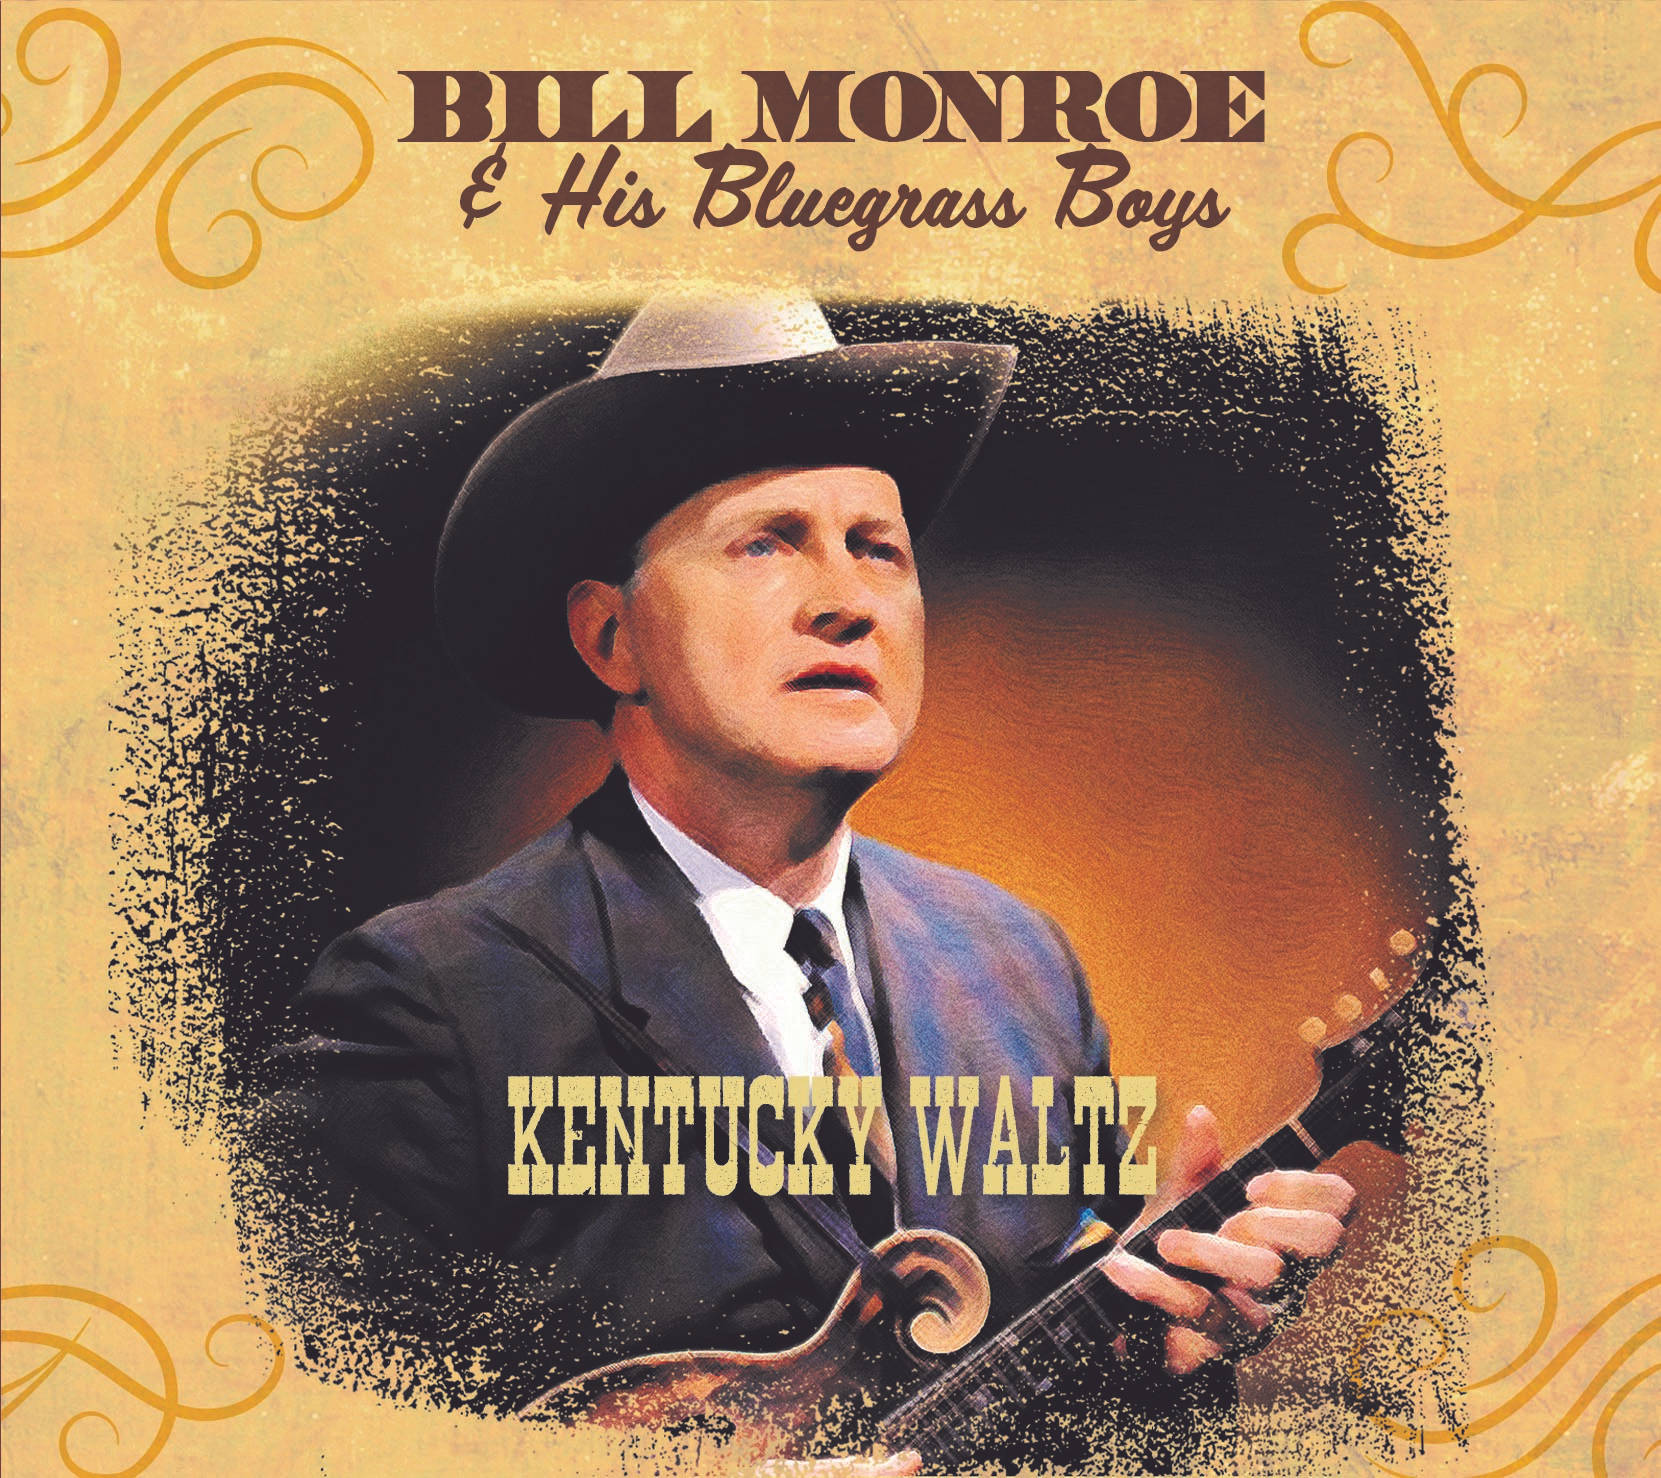 Bill Monroe And His Bluegrass Boys Kentucky Waltz Album Wallpaper